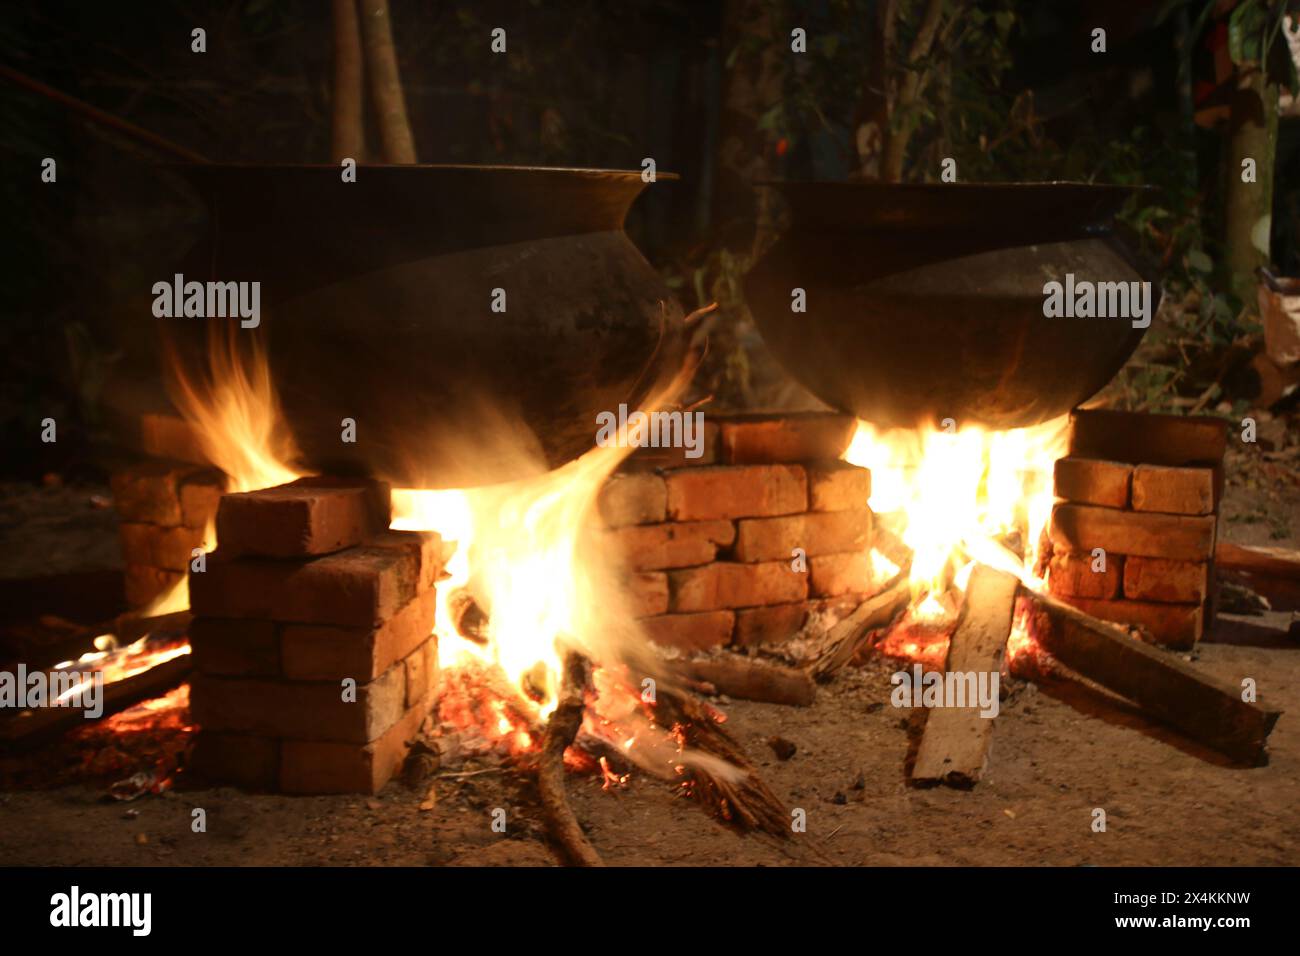 Biryani cucina in una festa del villaggio su un forno temporaneo in mattoni. Cucina all'aperto per molte persone in una grande teglia di alluminio nel fuoco a legna. cucina enorme Foto Stock